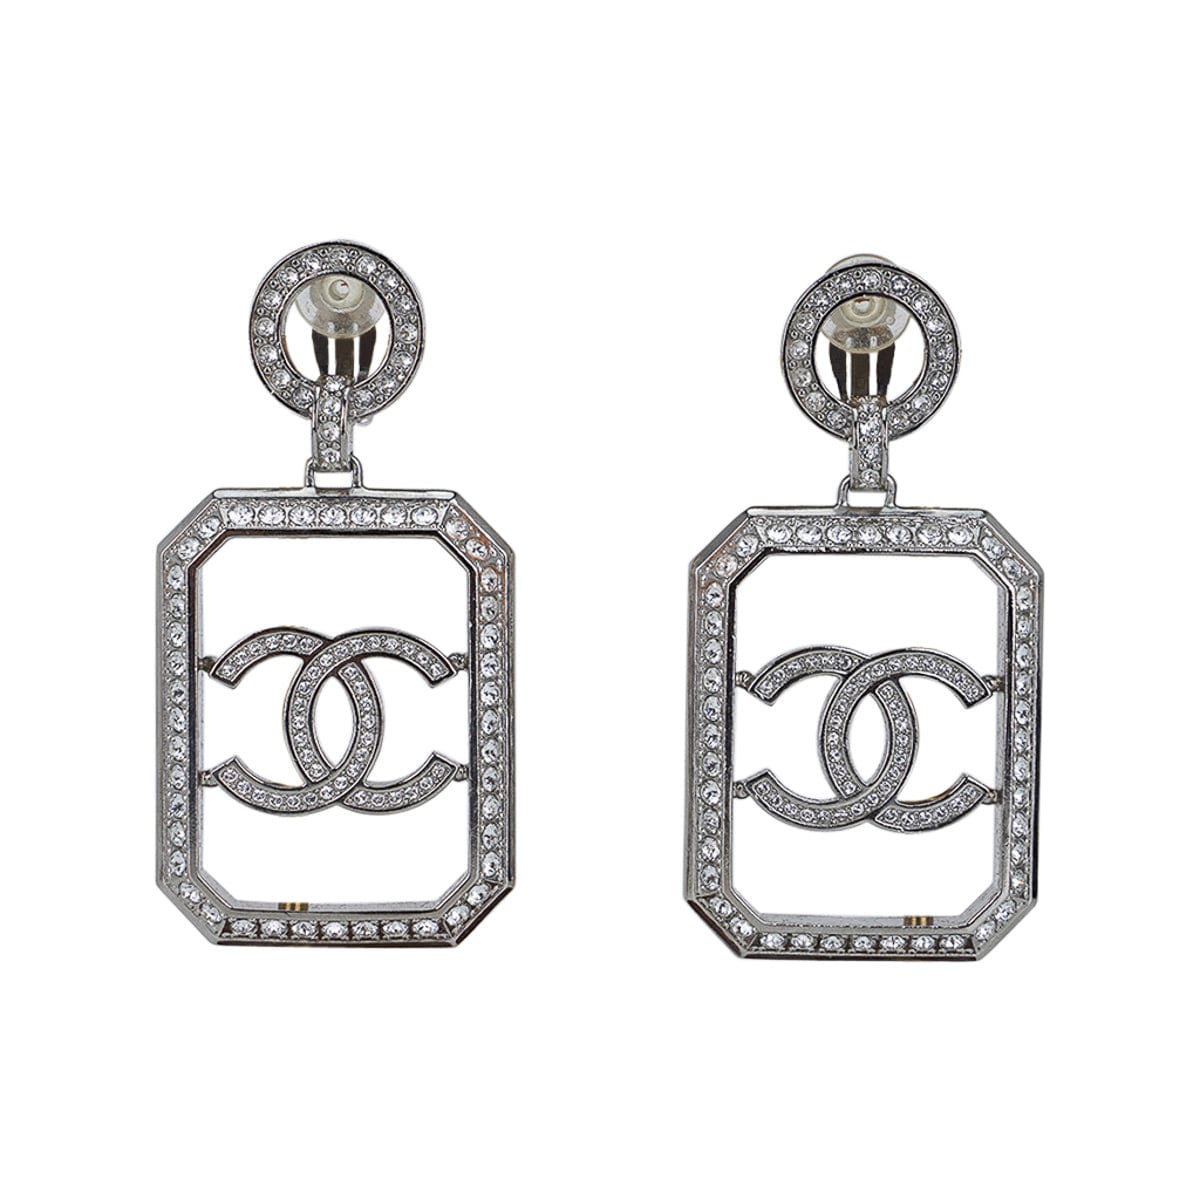 Chanel 2018 Earrings - 17 For Sale on 1stDibs  chanel earrings 2018  collection, chanel scissor earrings, chanel earrings greece